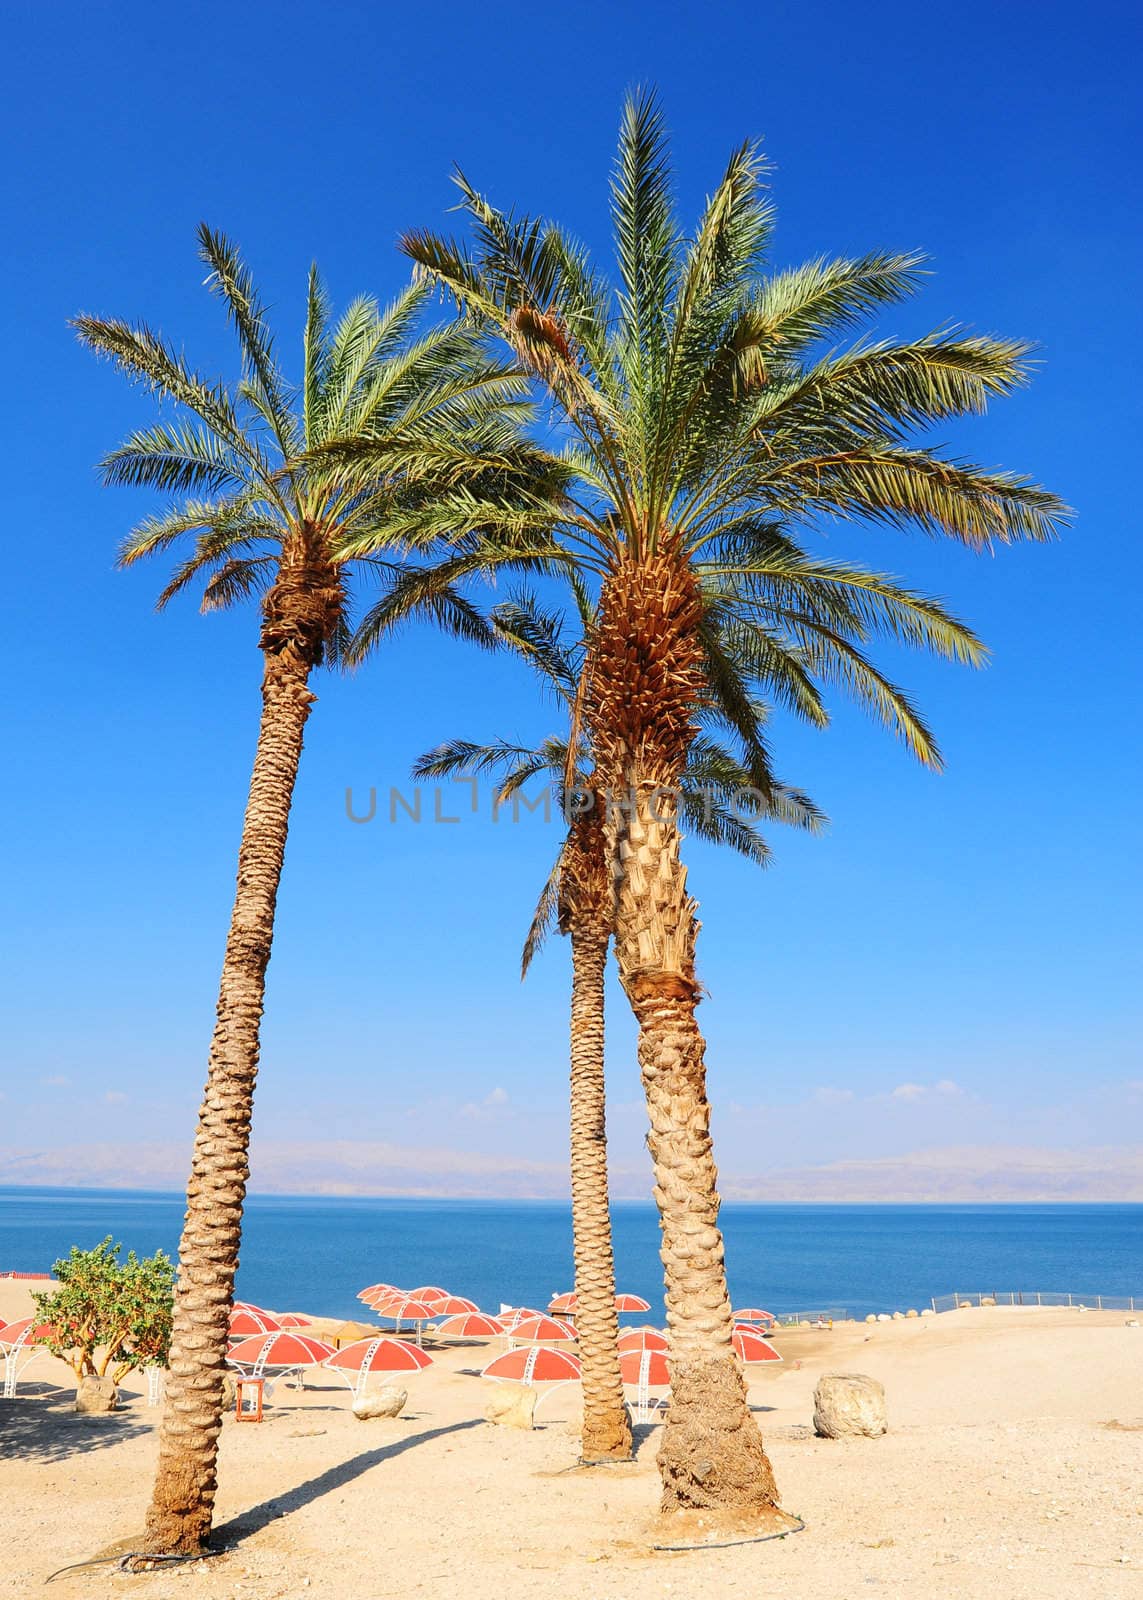 Umbrellas On Sandy Beach Of Dead Sea, Israel